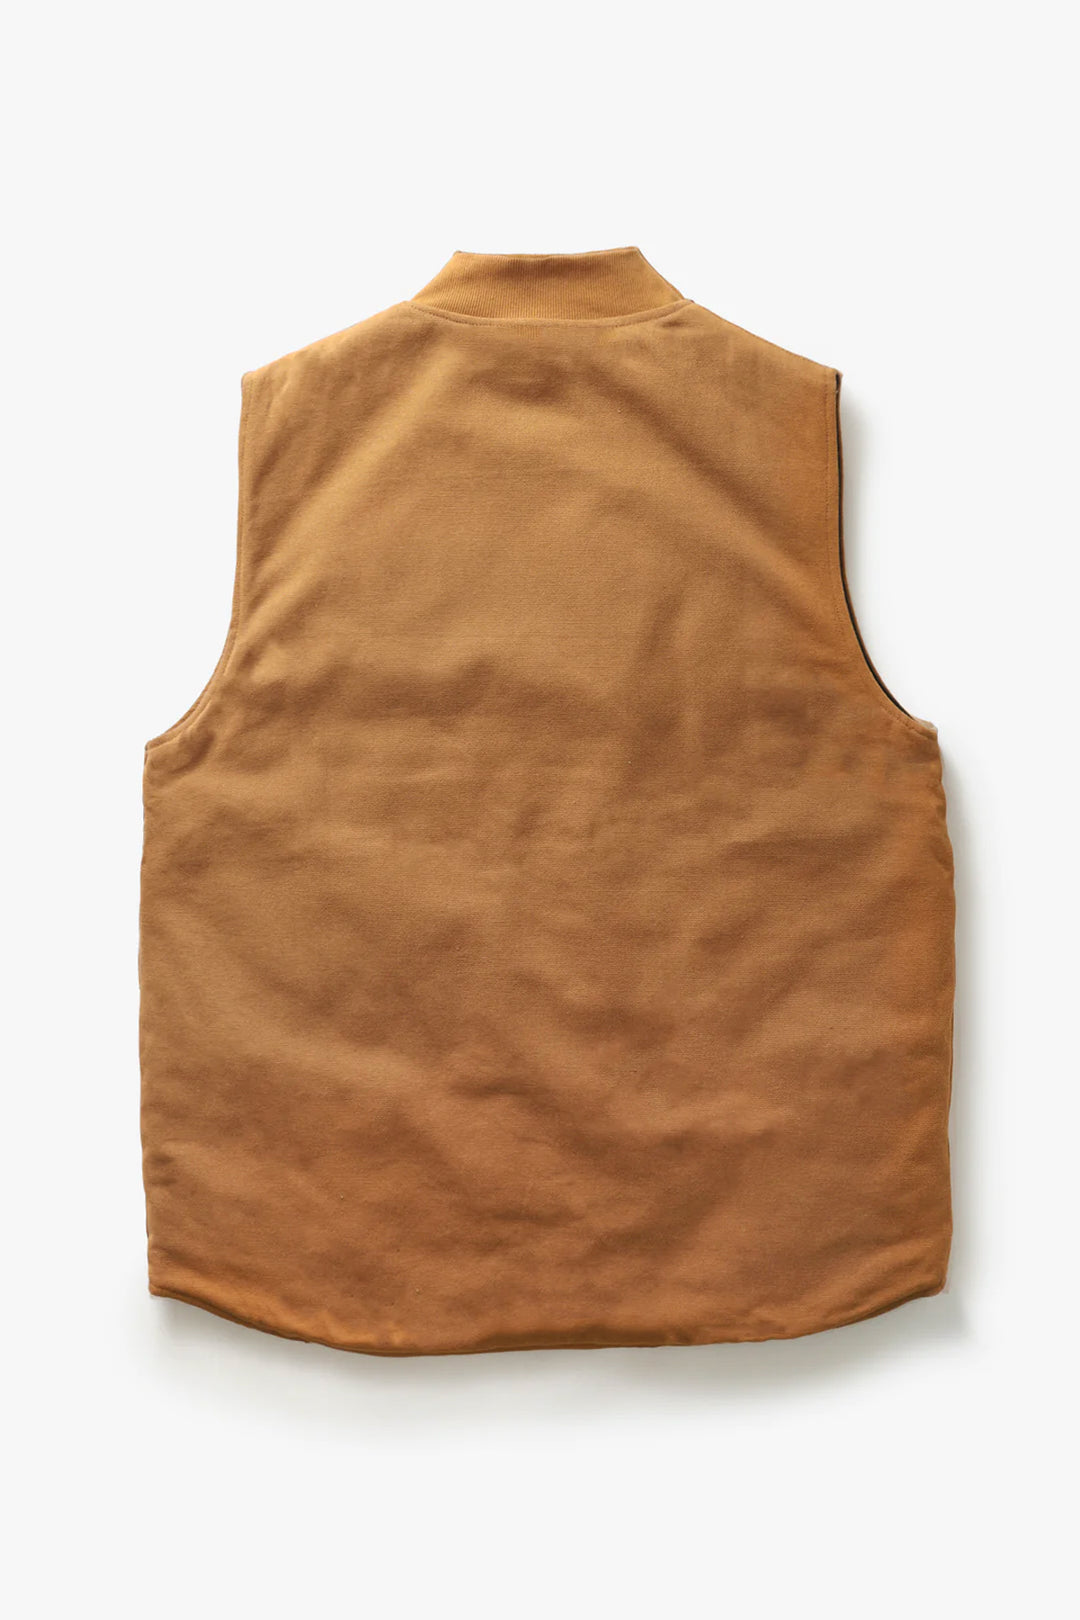 Power Goods - Canvas Work Vest - Brown